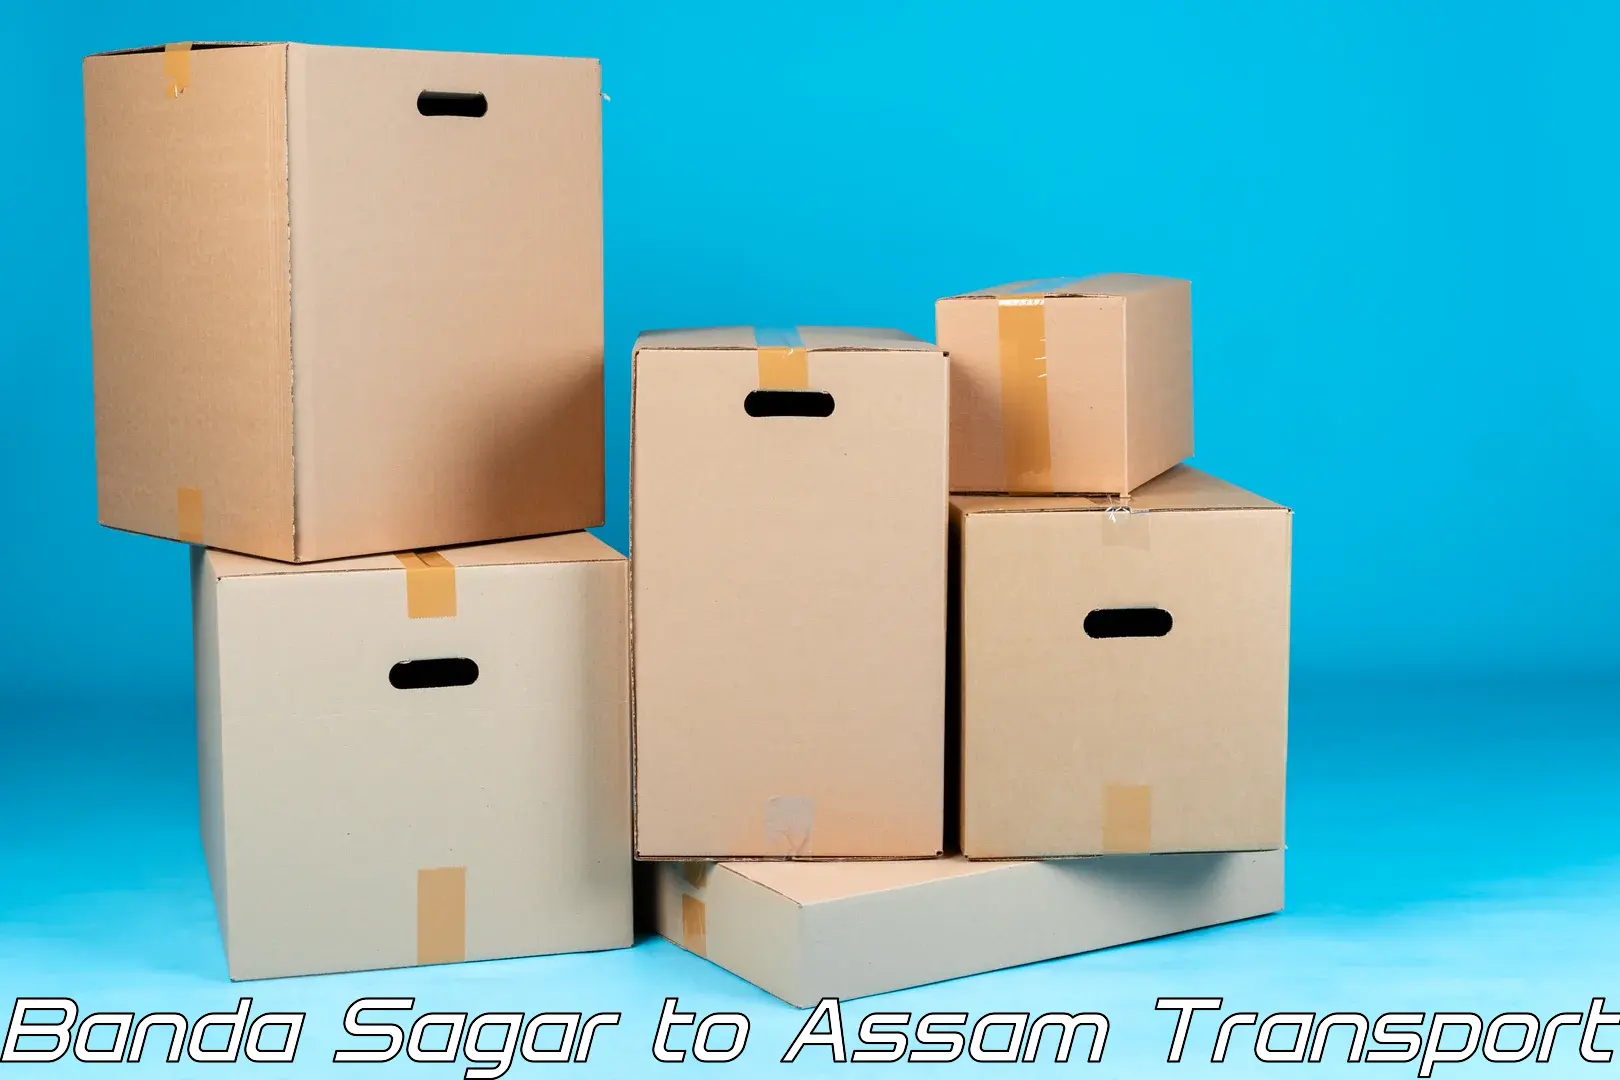 Interstate goods transport Banda Sagar to Nagaon